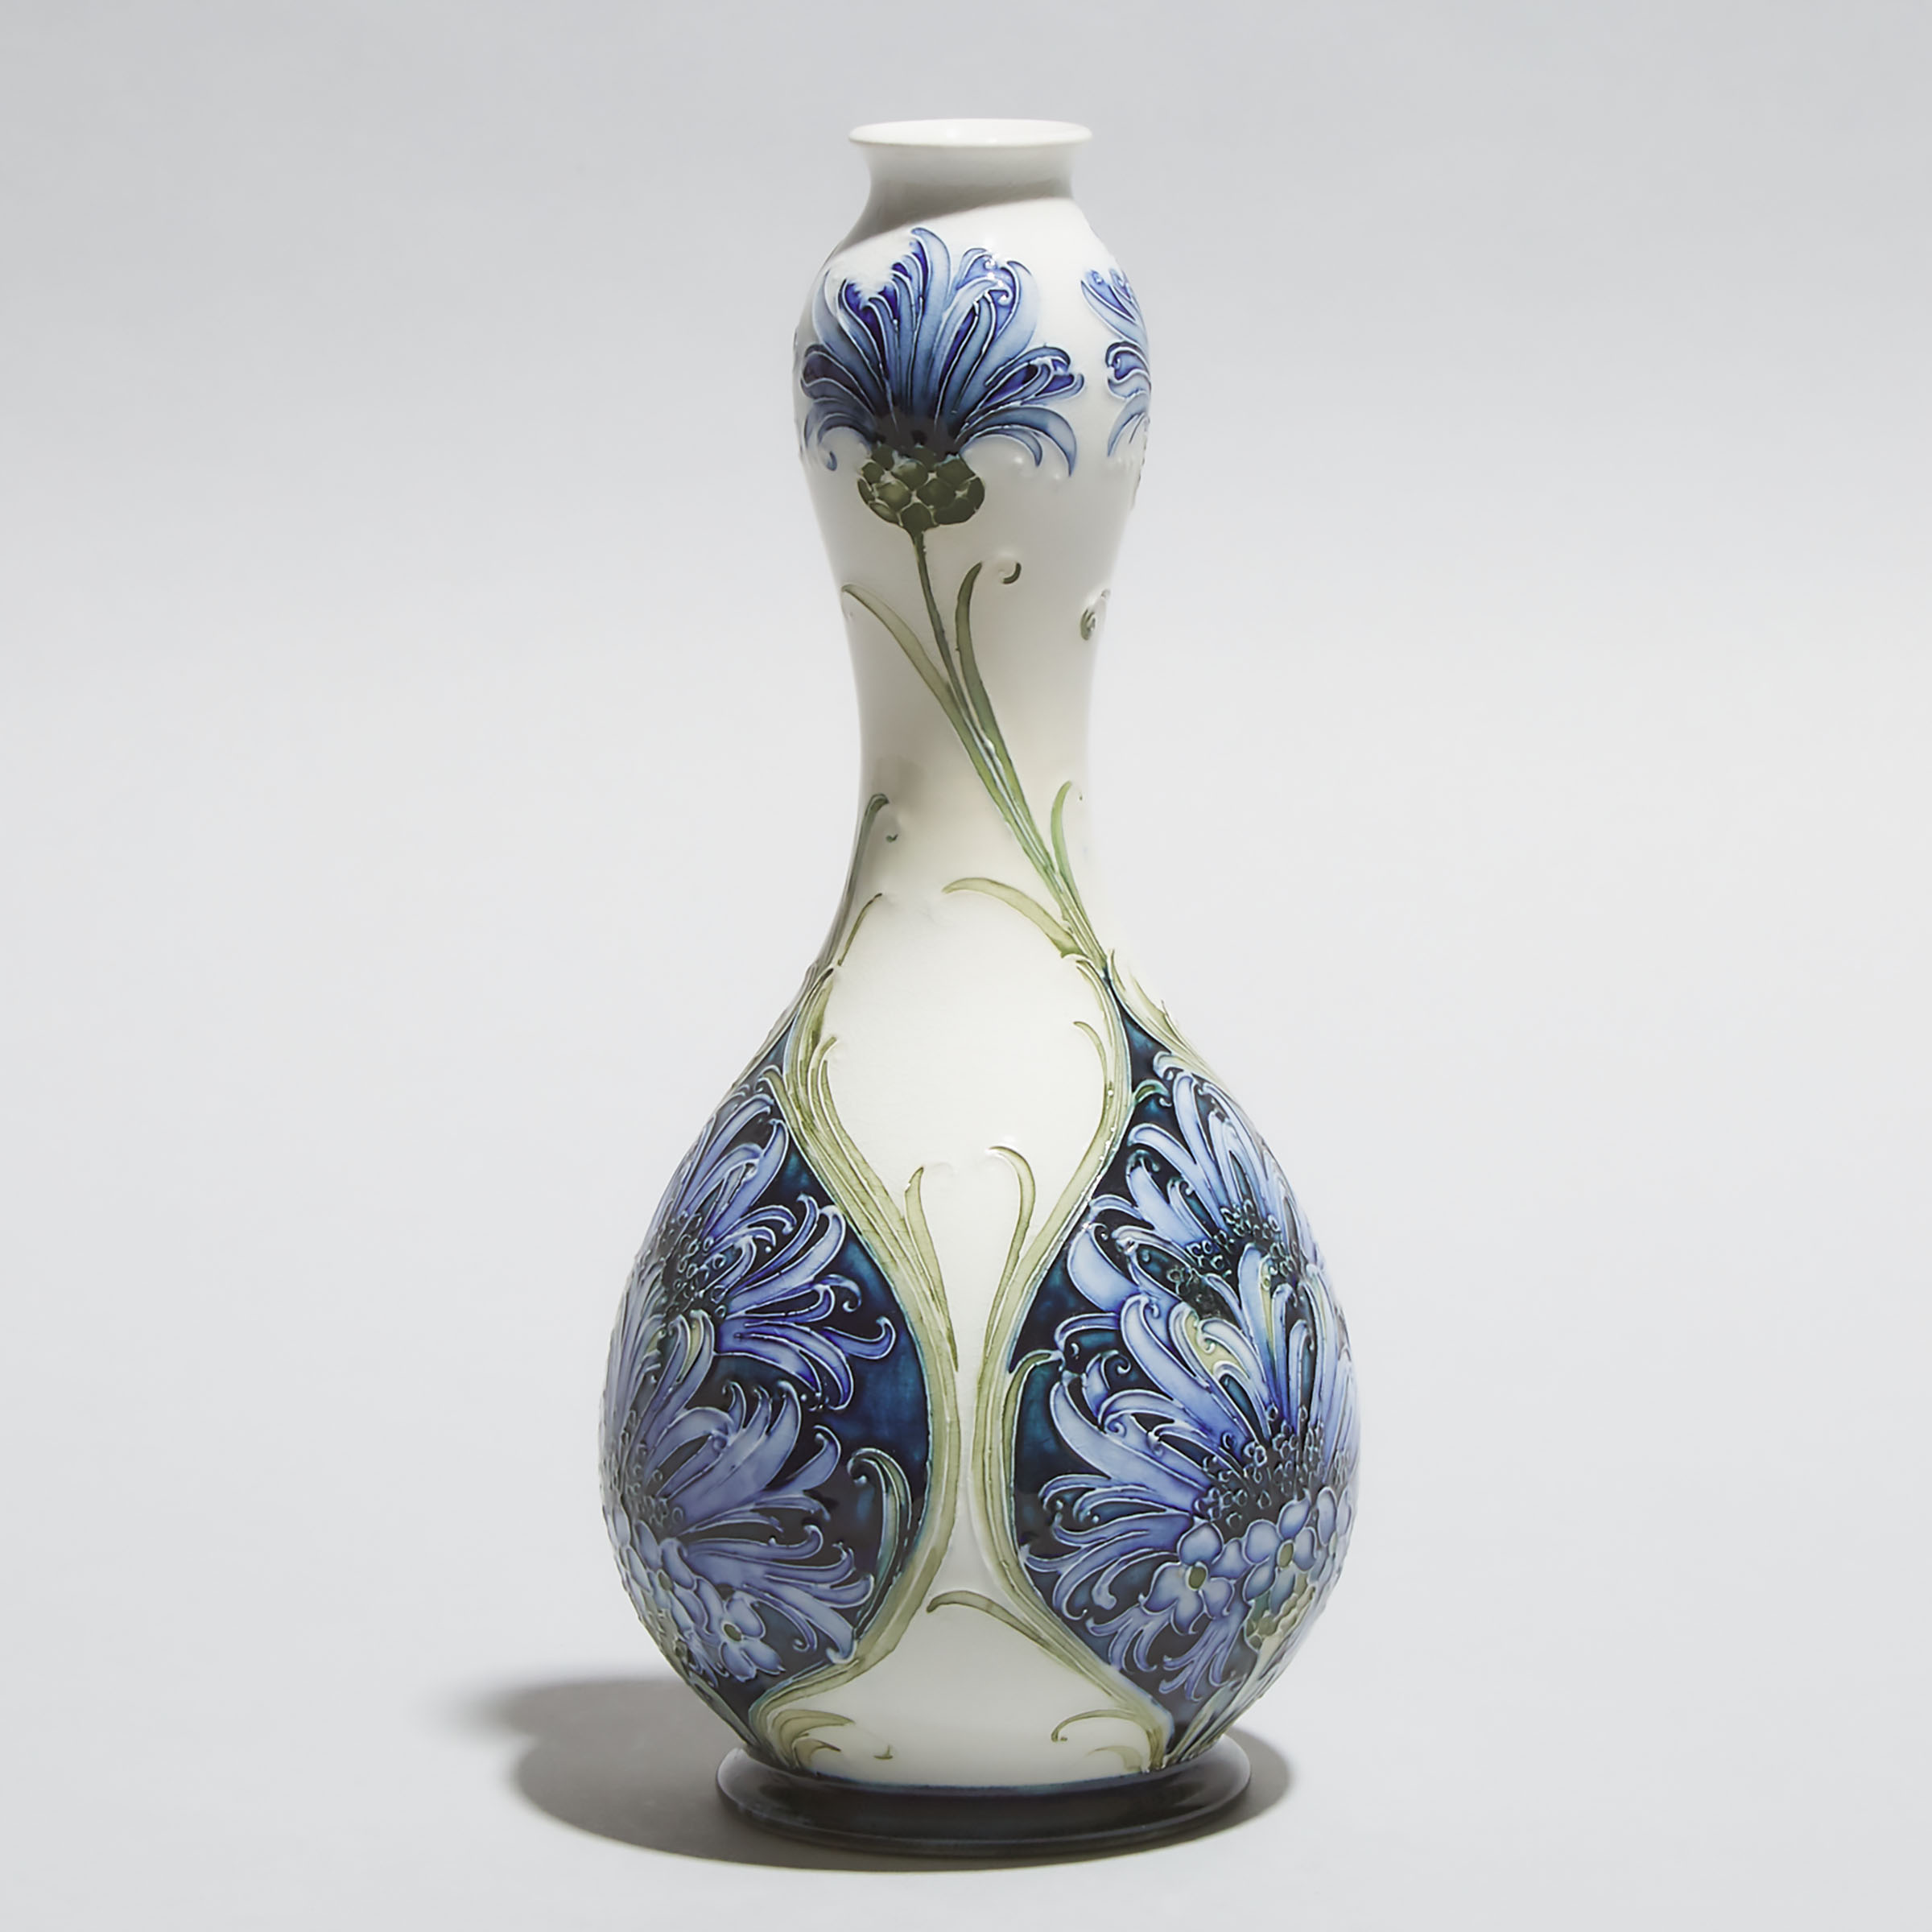 Macintyre Moorcroft Florian Ware Cornflower Vase, c.1900-05